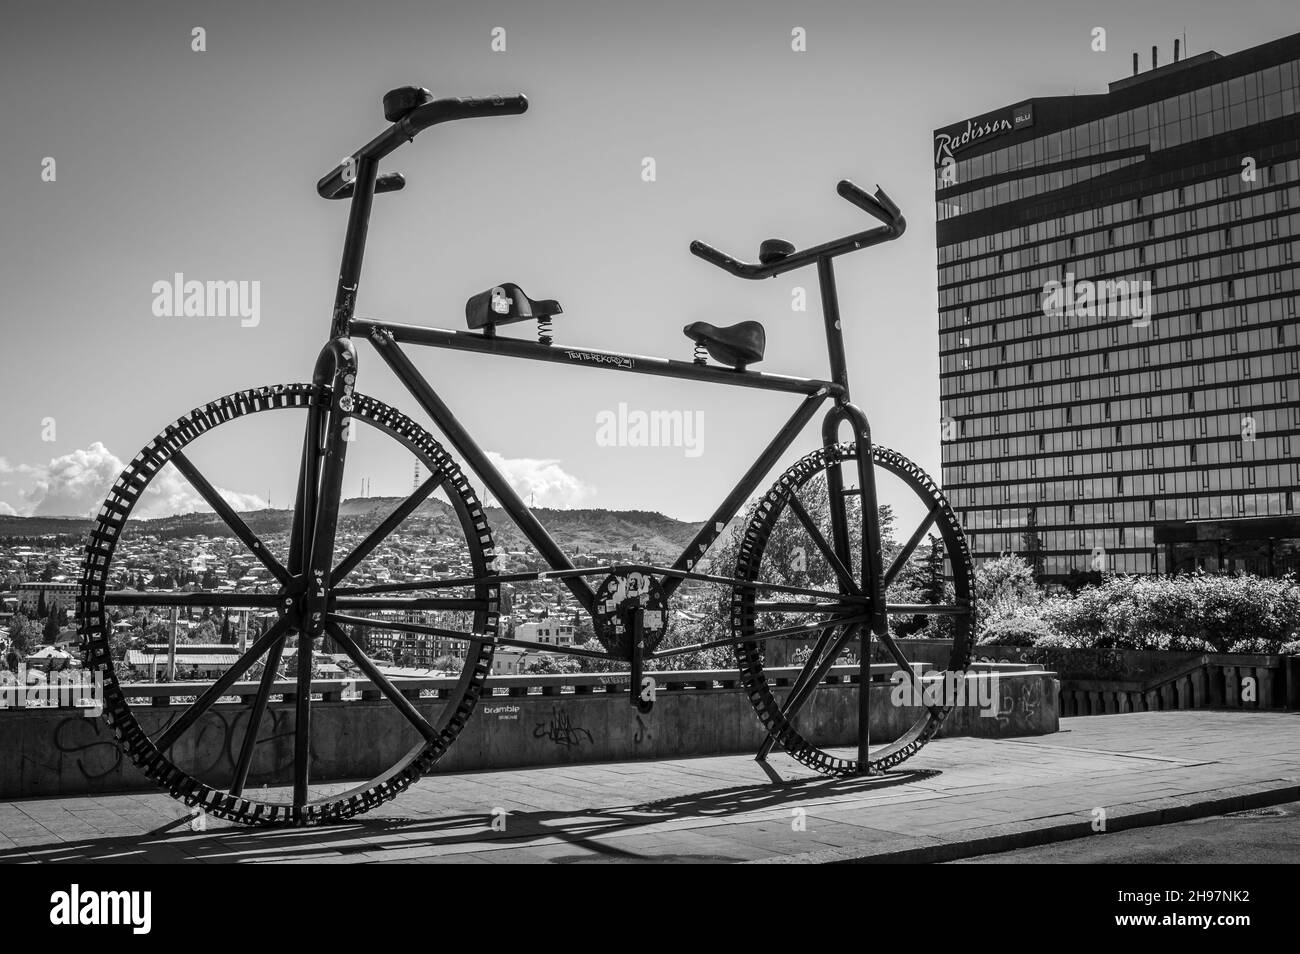 Monument géant à vélo à deux côtés sur l'avenue Rustaveli.Tbilissi, Géorgie.Noir et blanc. Banque D'Images